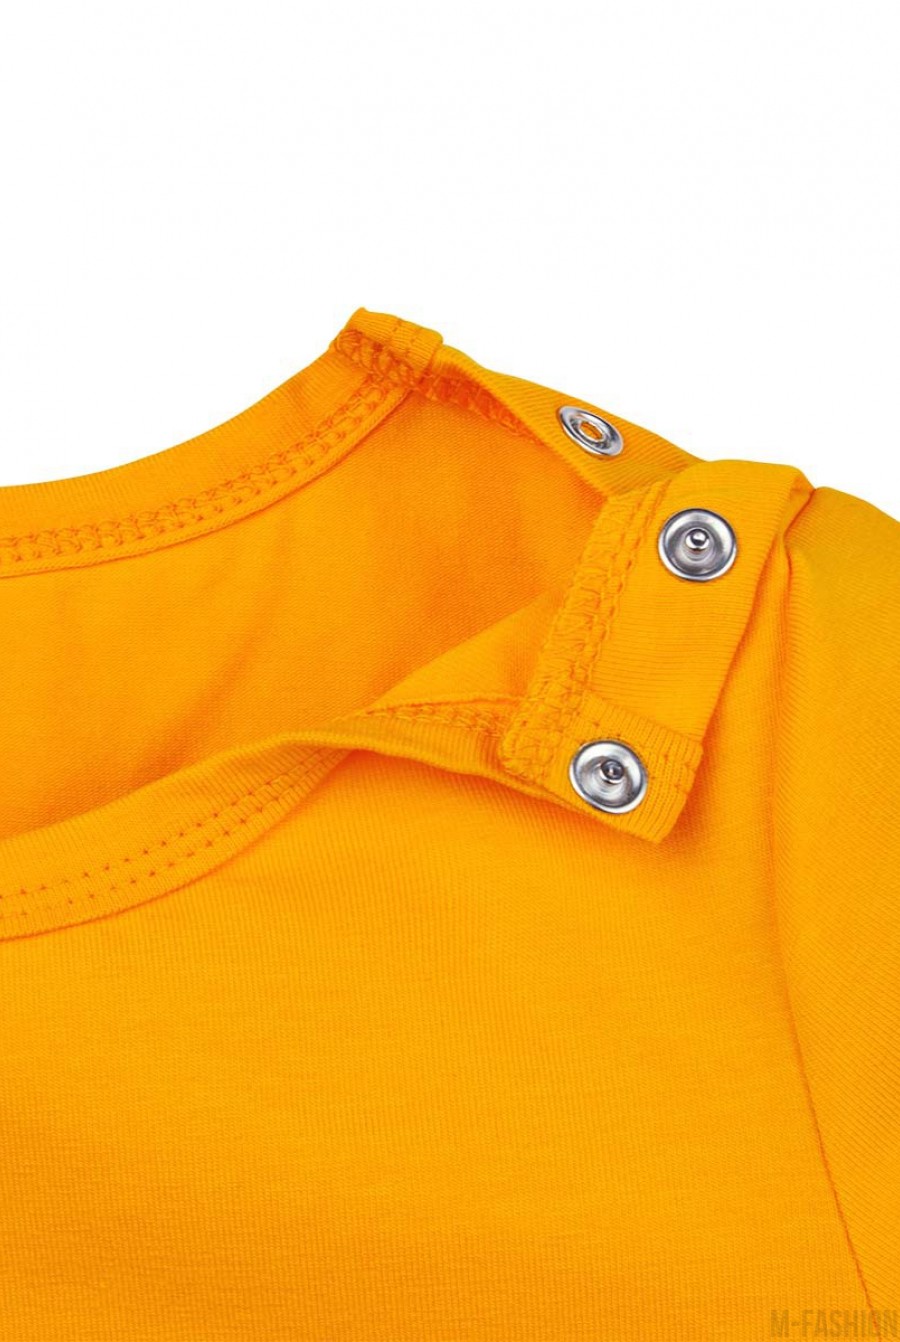 Оранжевая трикотажная футболка с возможностью индивидуальной печати фамилии и номера на принте- Фото 3